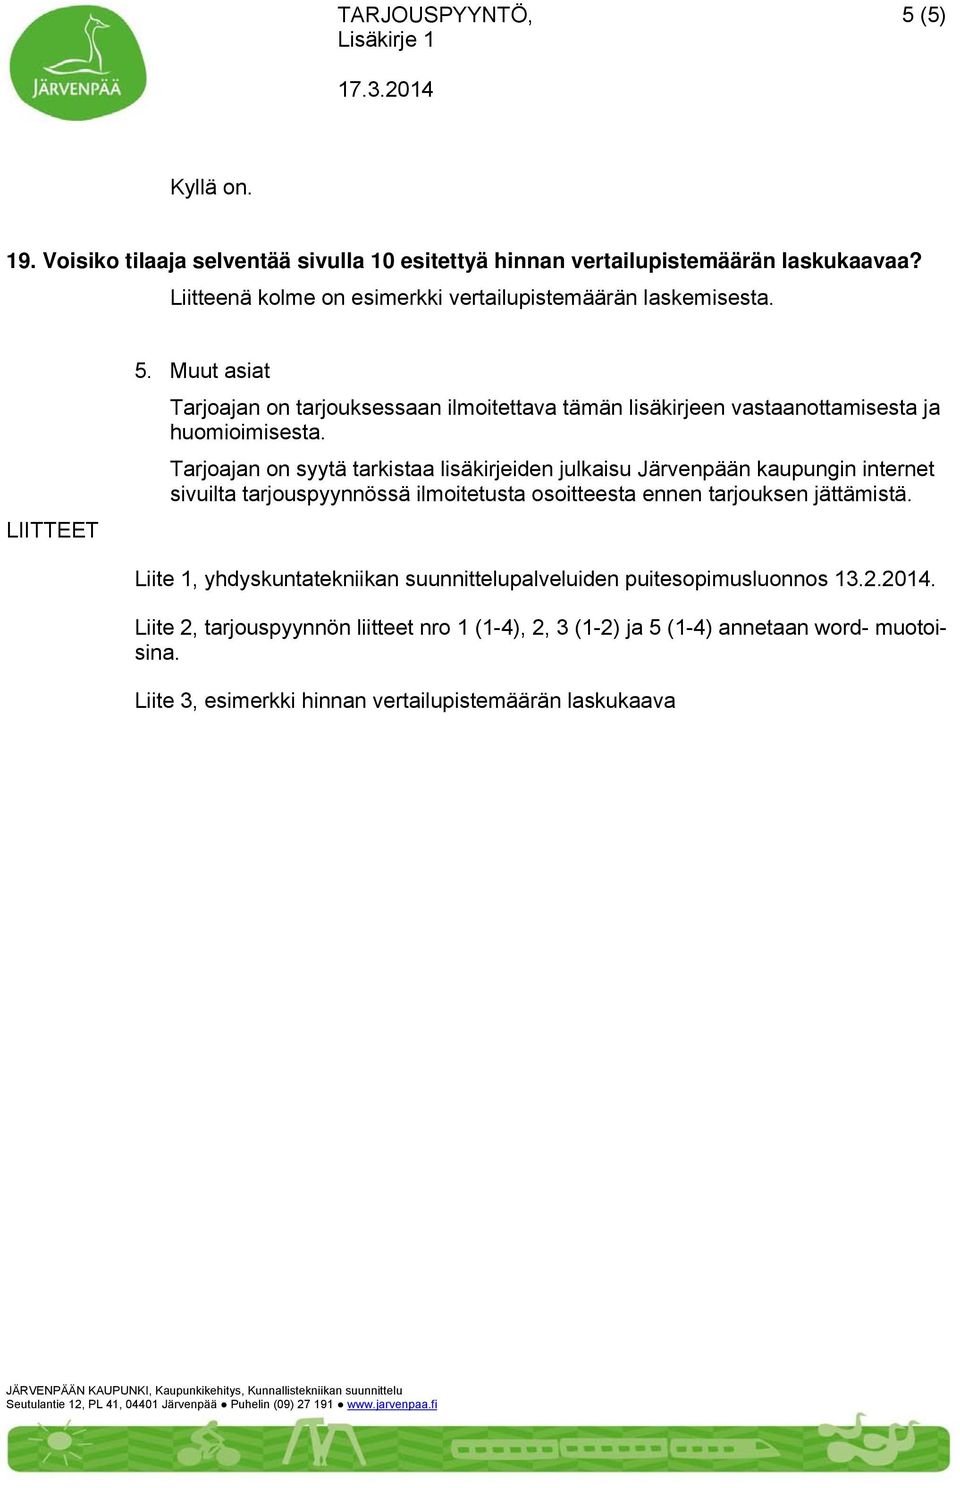 Tarjoajan on syytä tarkistaa lisäkirjeiden julkaisu Järvenpään kaupungin internet sivuilta tarjouspyynnössä ilmoitetusta osoitteesta ennen tarjouksen jättämistä.